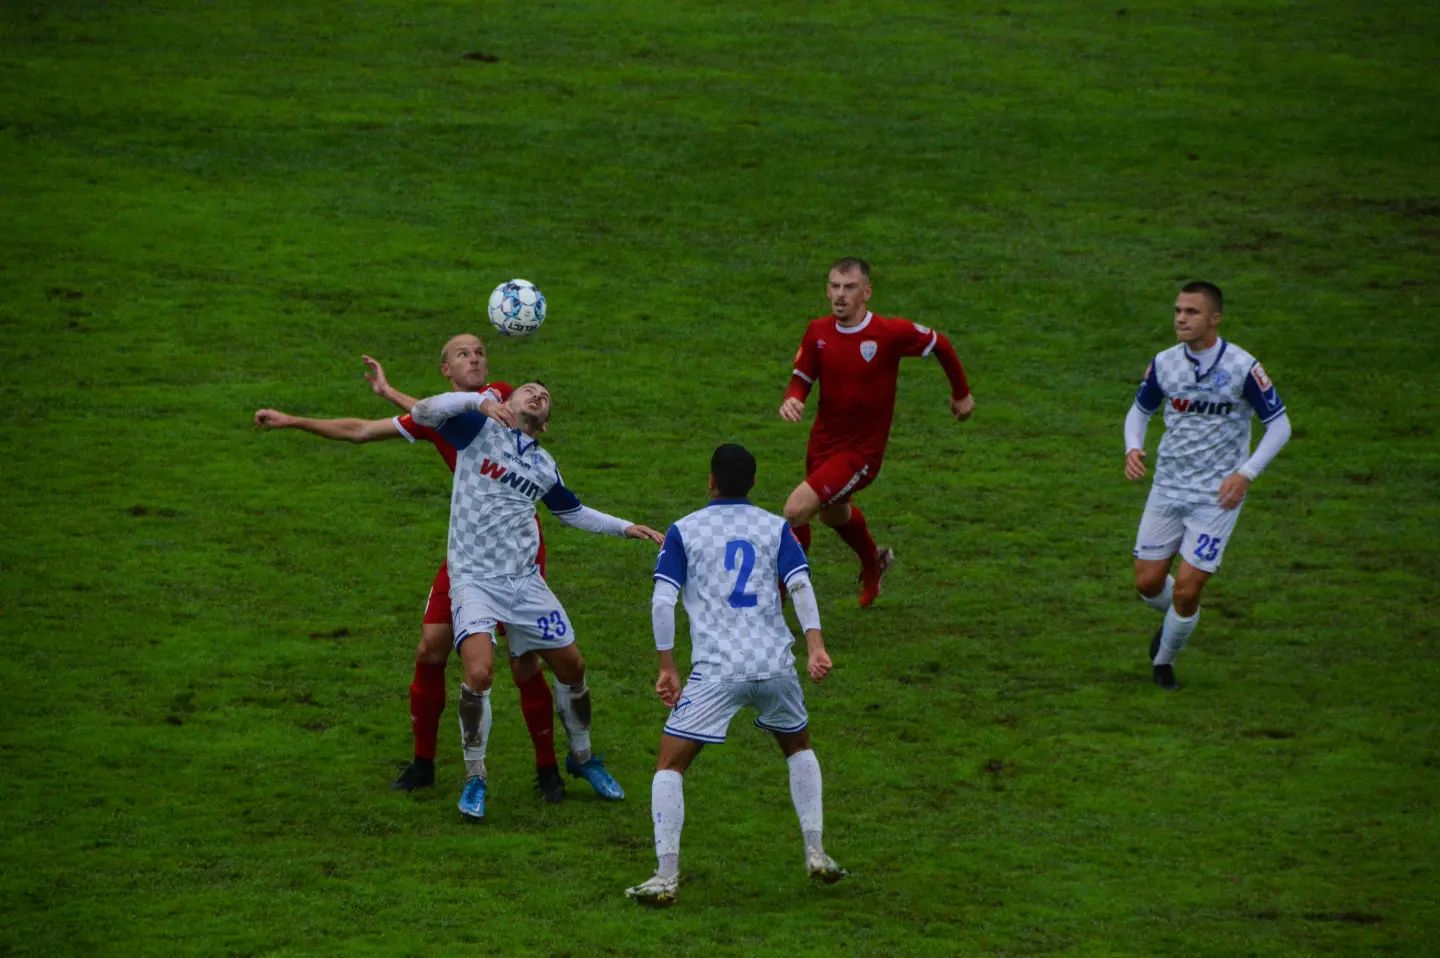 Poraz uprkos jako dobroj i borbenoj igri u Kupu Srbije: Radnički - Vojvodina  0:1 Idemo dalje, vreme je za bolje partije i rezultate u…